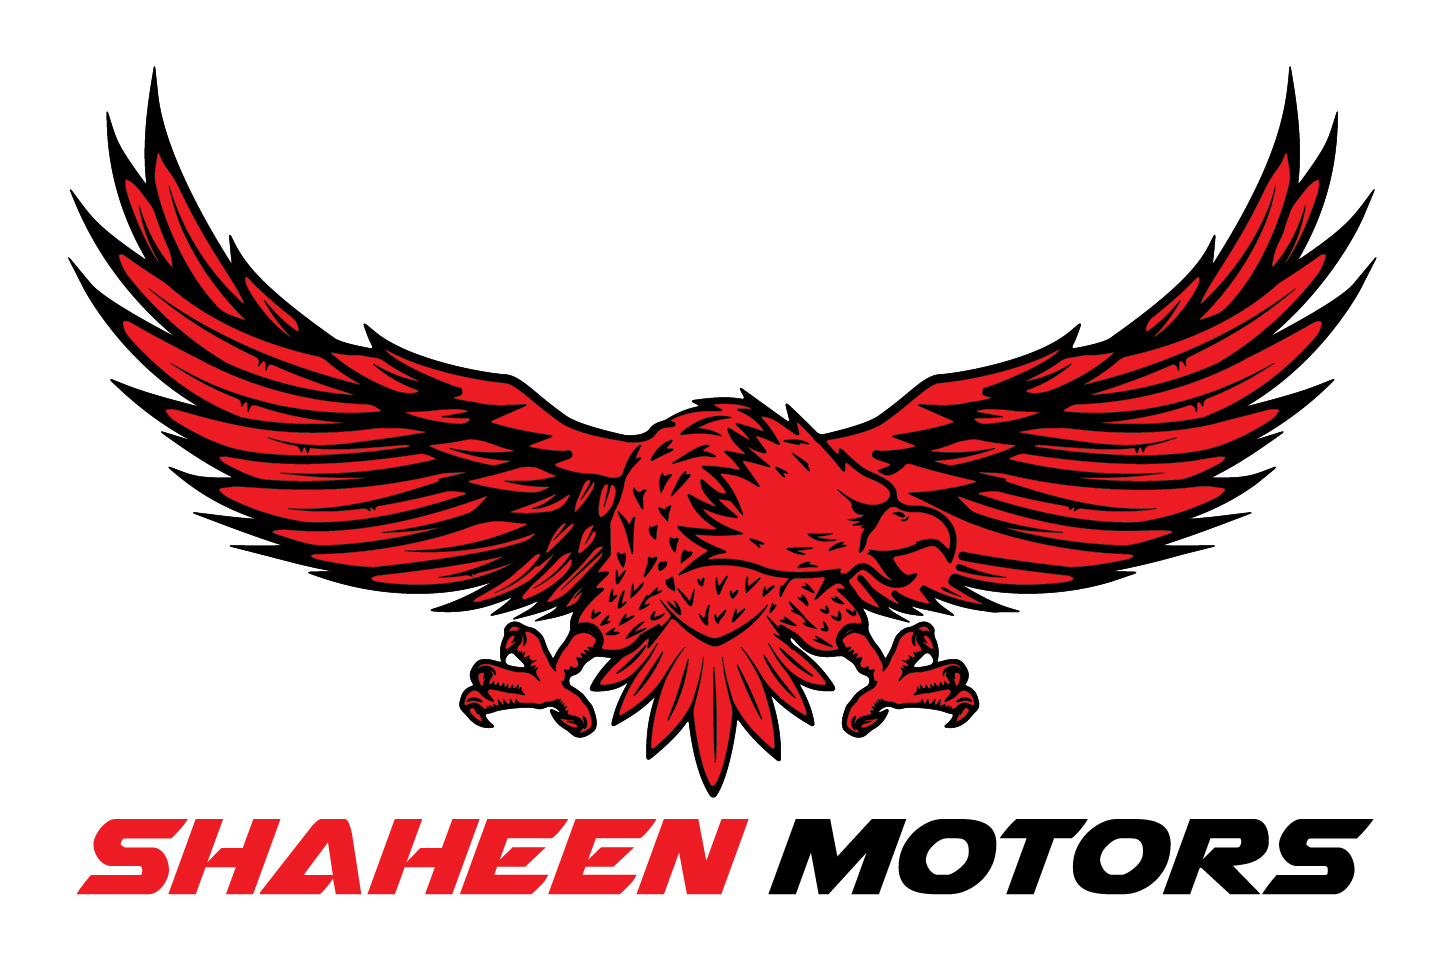 Shaheen Motors